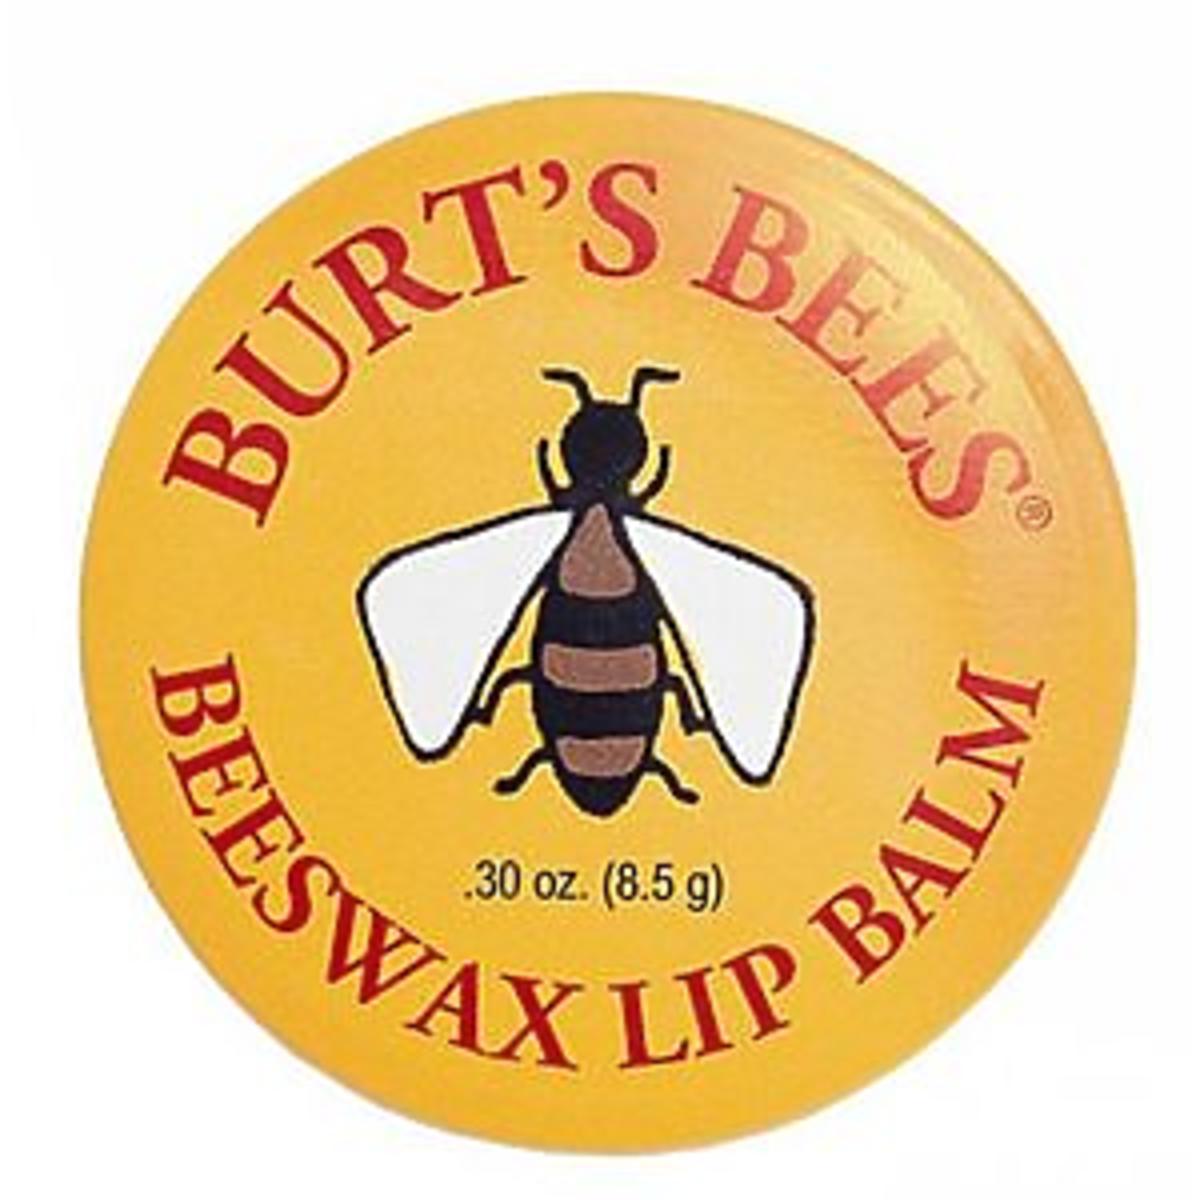 Burt's Bees, Beeswax Lip Balm (Balsam do ust z woskiem pszczelim)